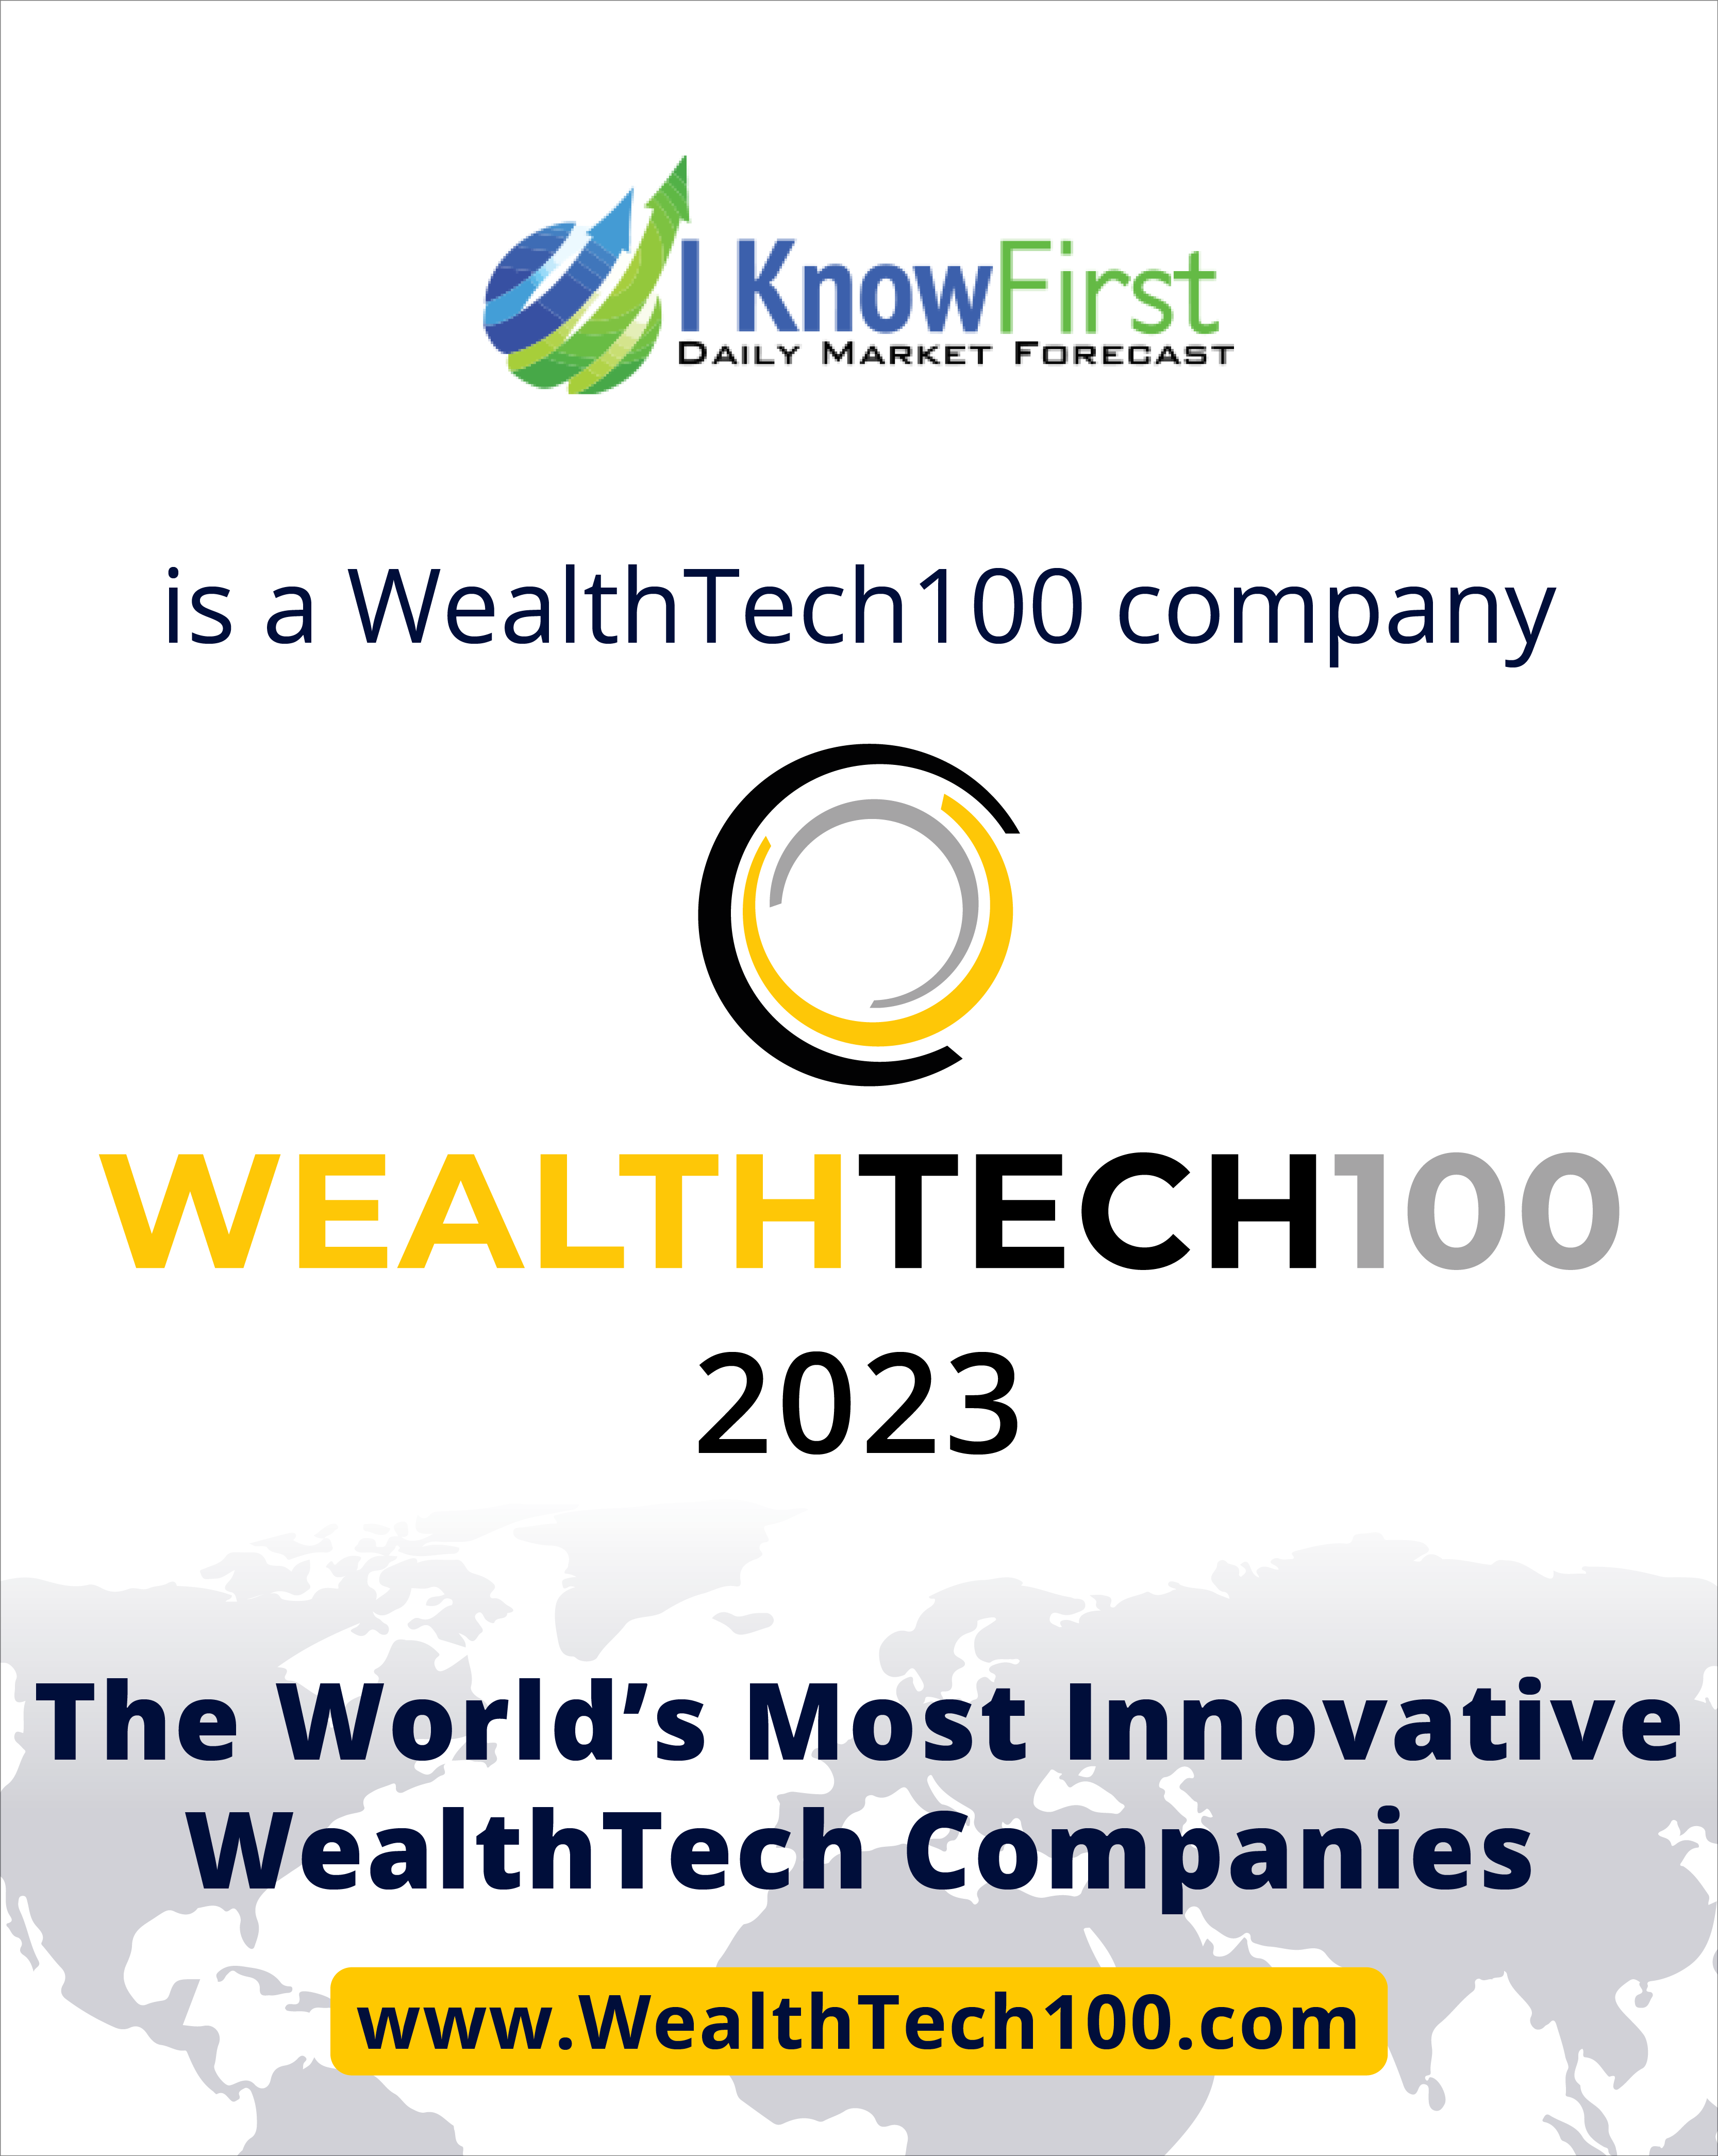 Wealthtech100 company